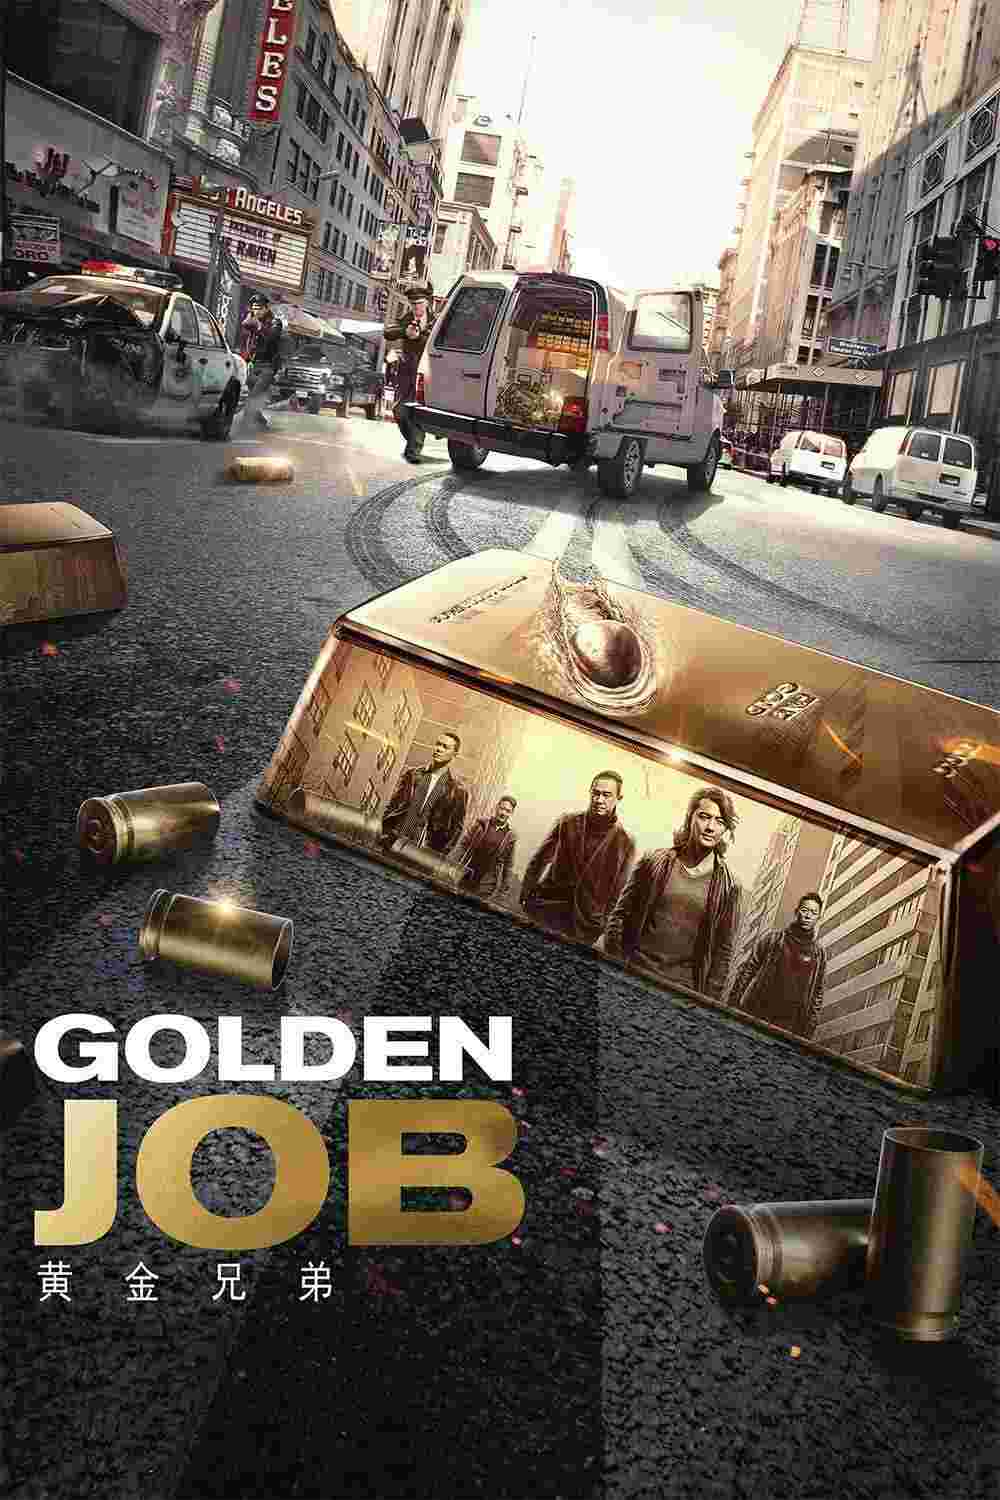 Golden Job (2018) Ekin Cheng